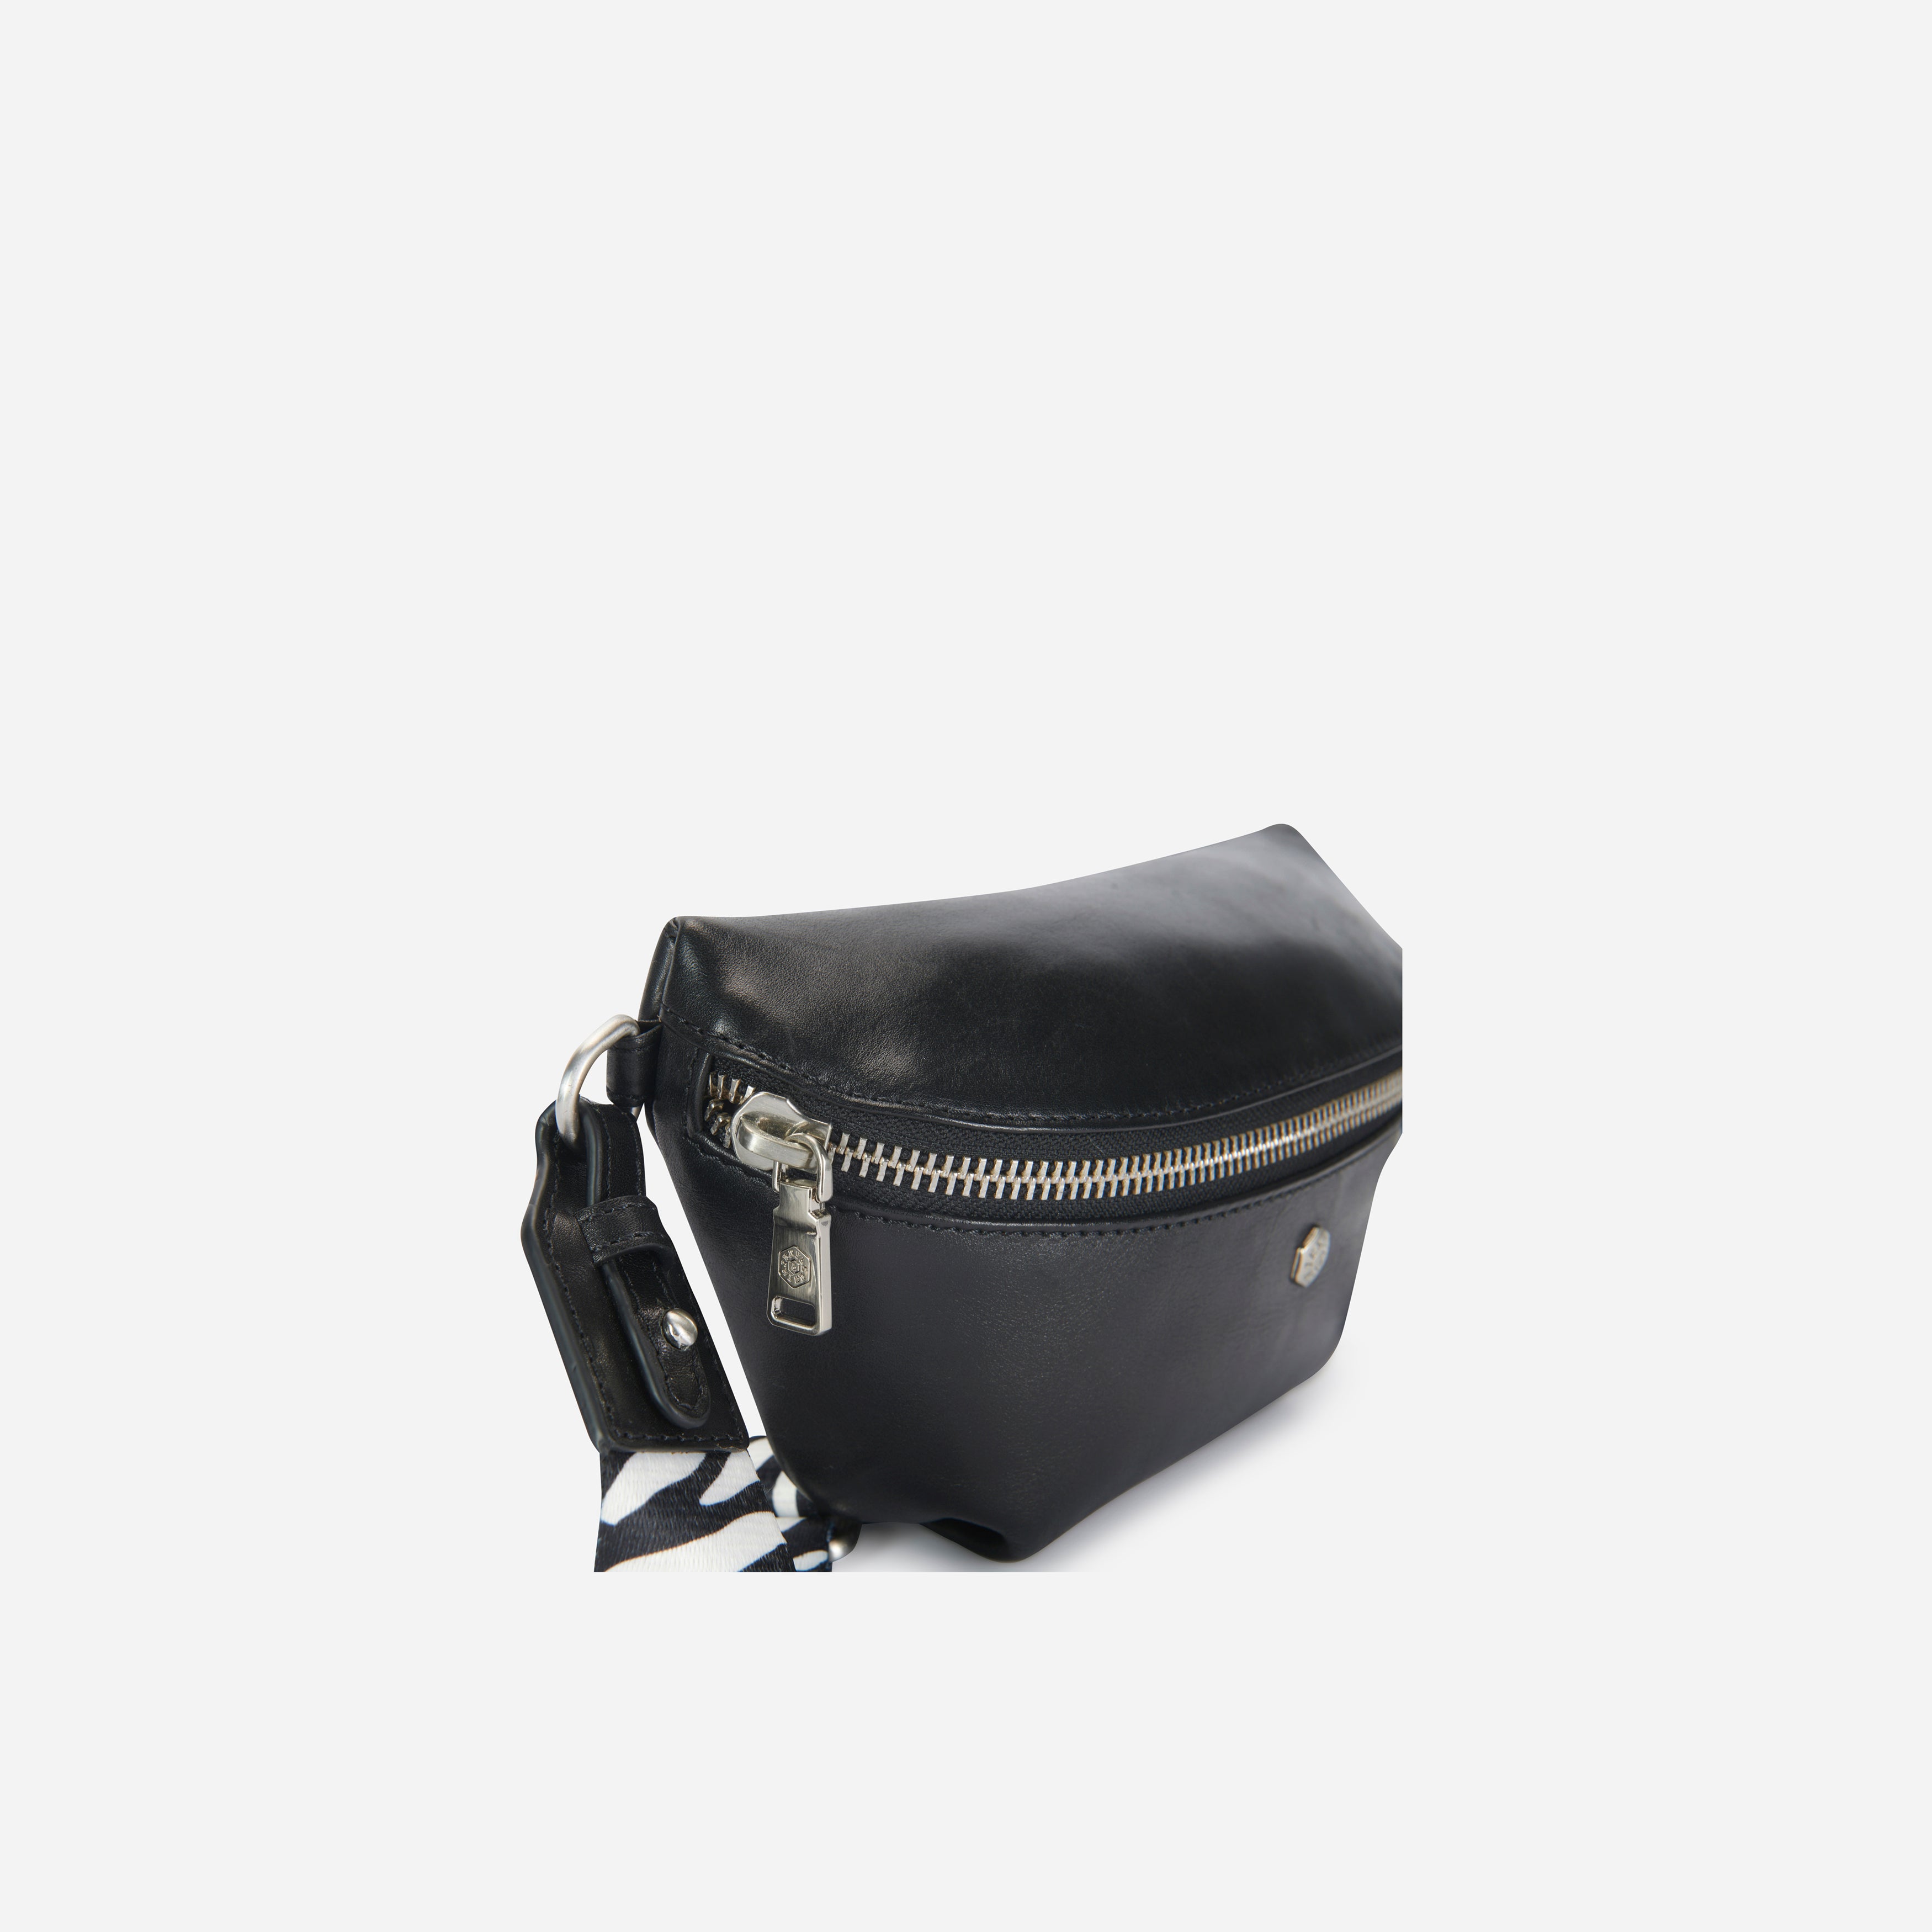 Osaka Slim Ladies Leather Waist Bag, Black